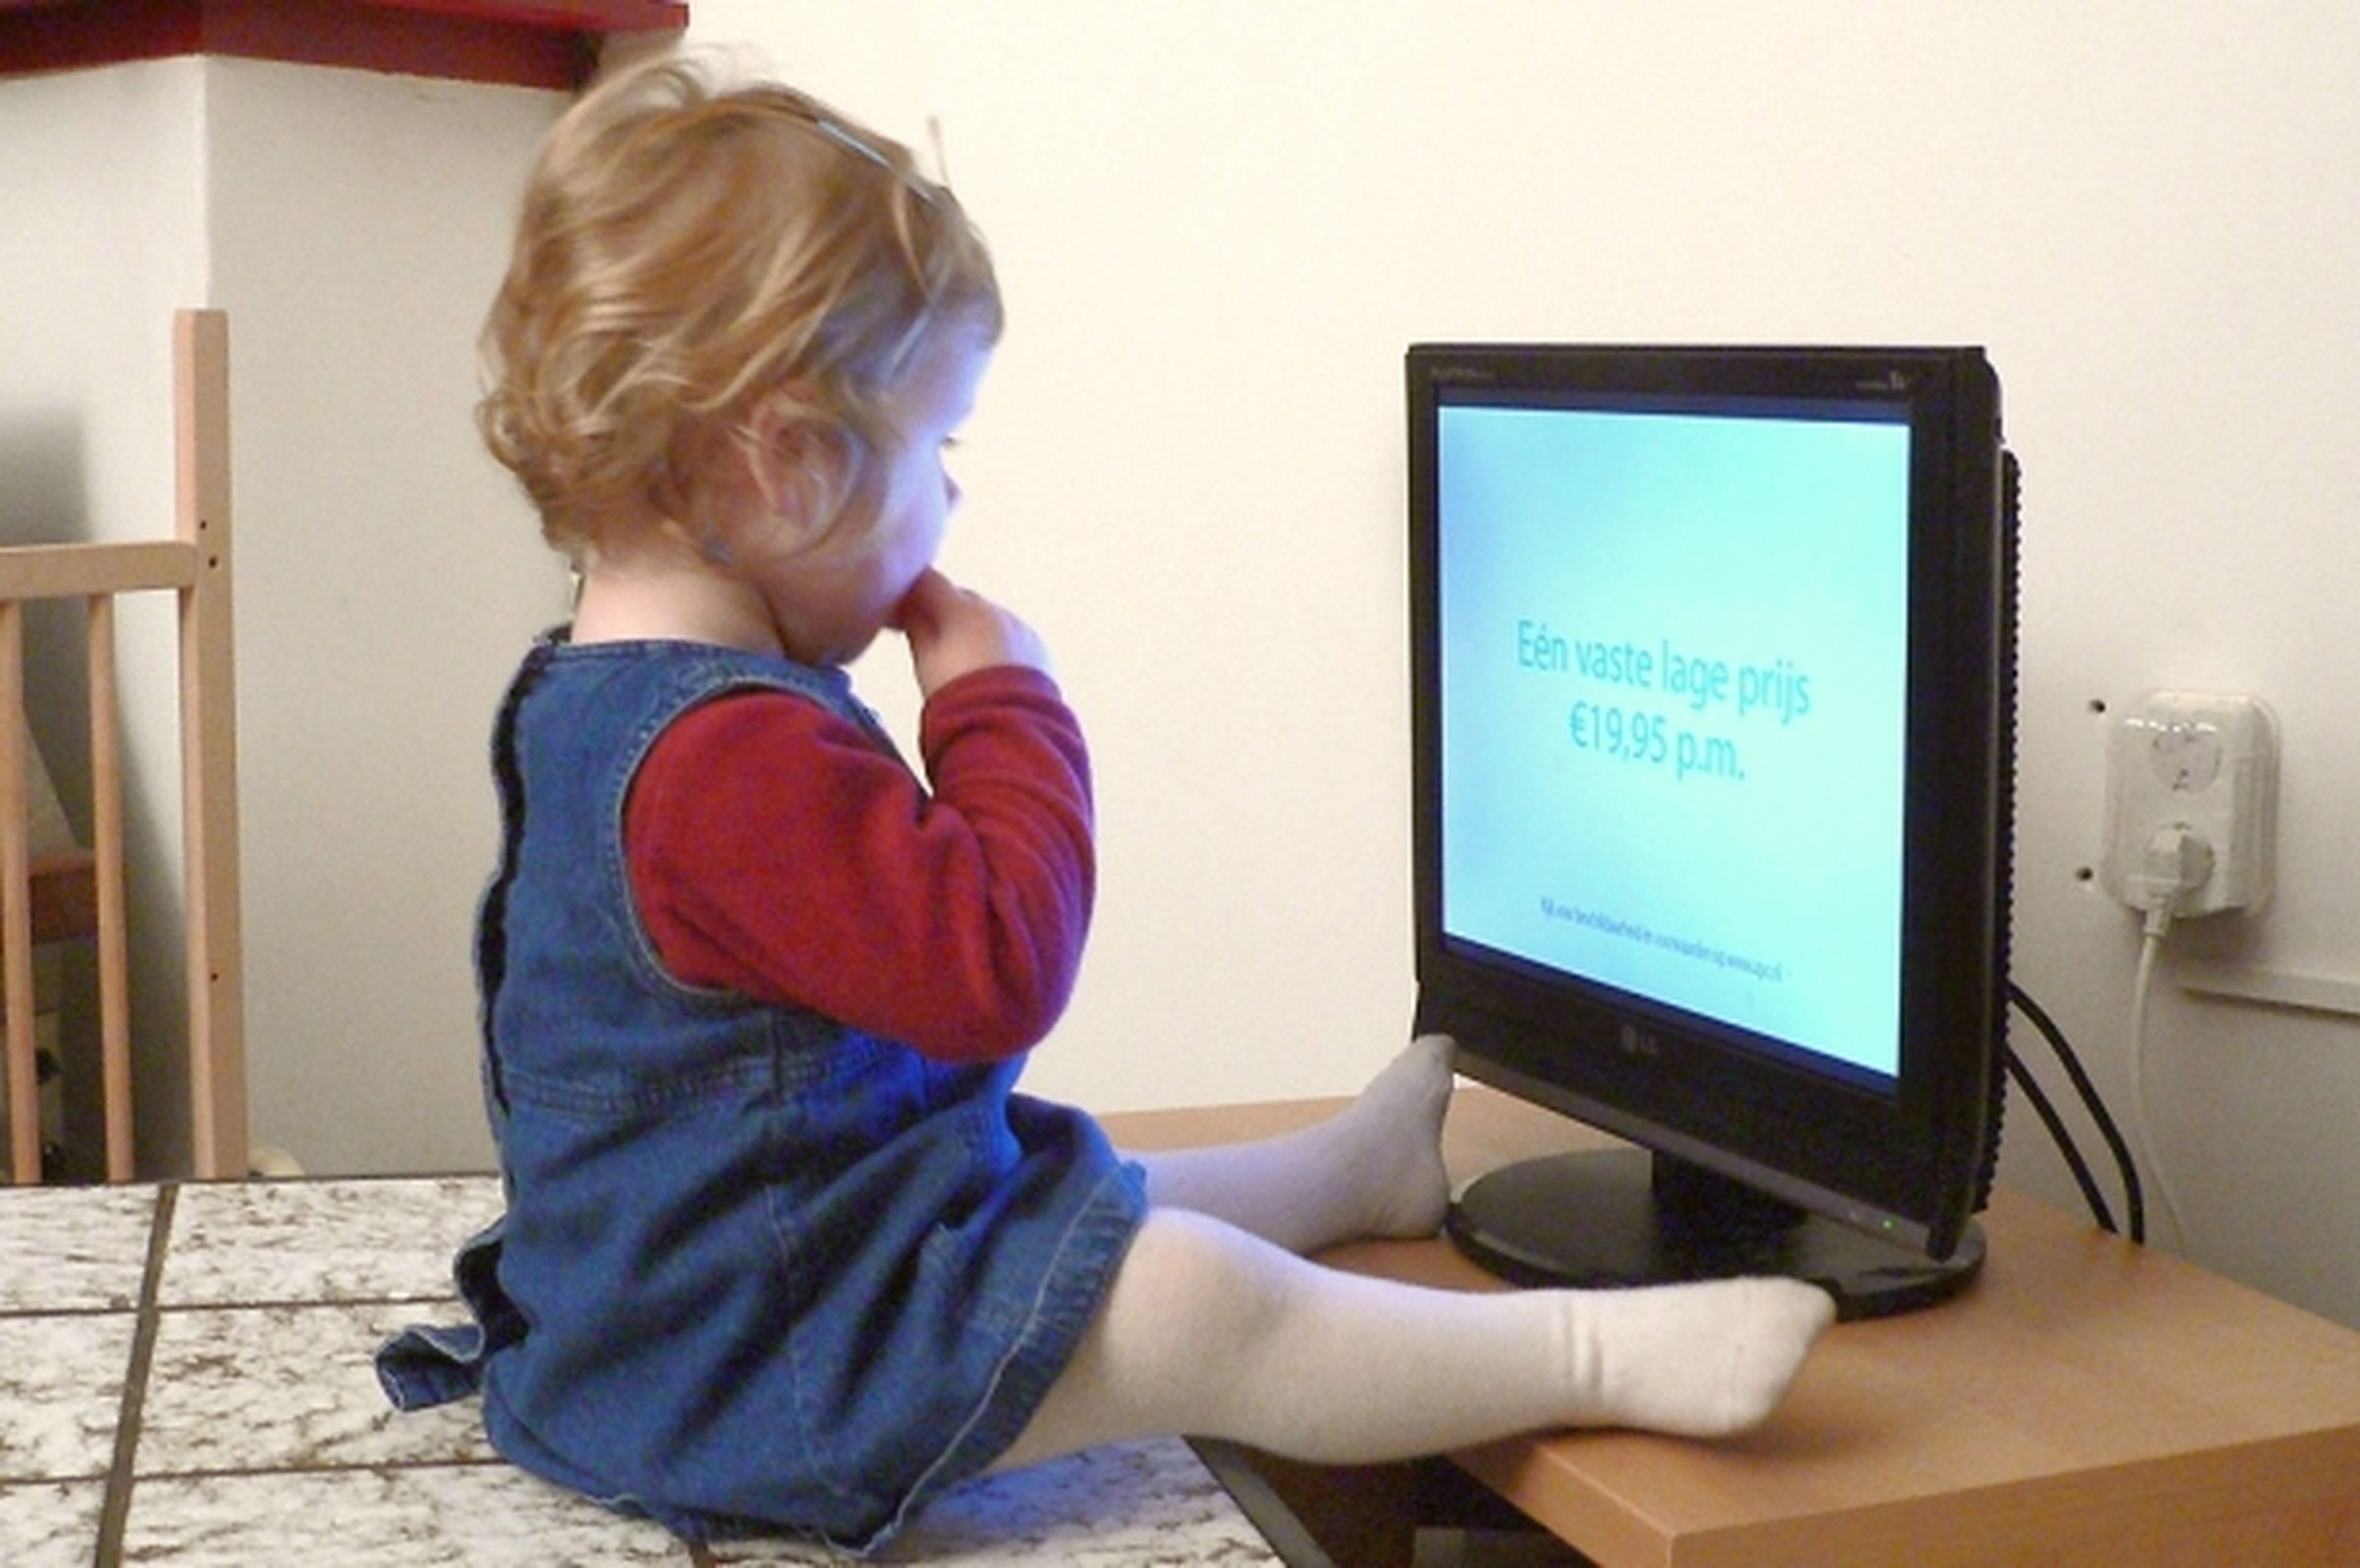 Un niño herido cada media hora por caída de televisor en USA. Fuente: Flickr (Erik eti smit)